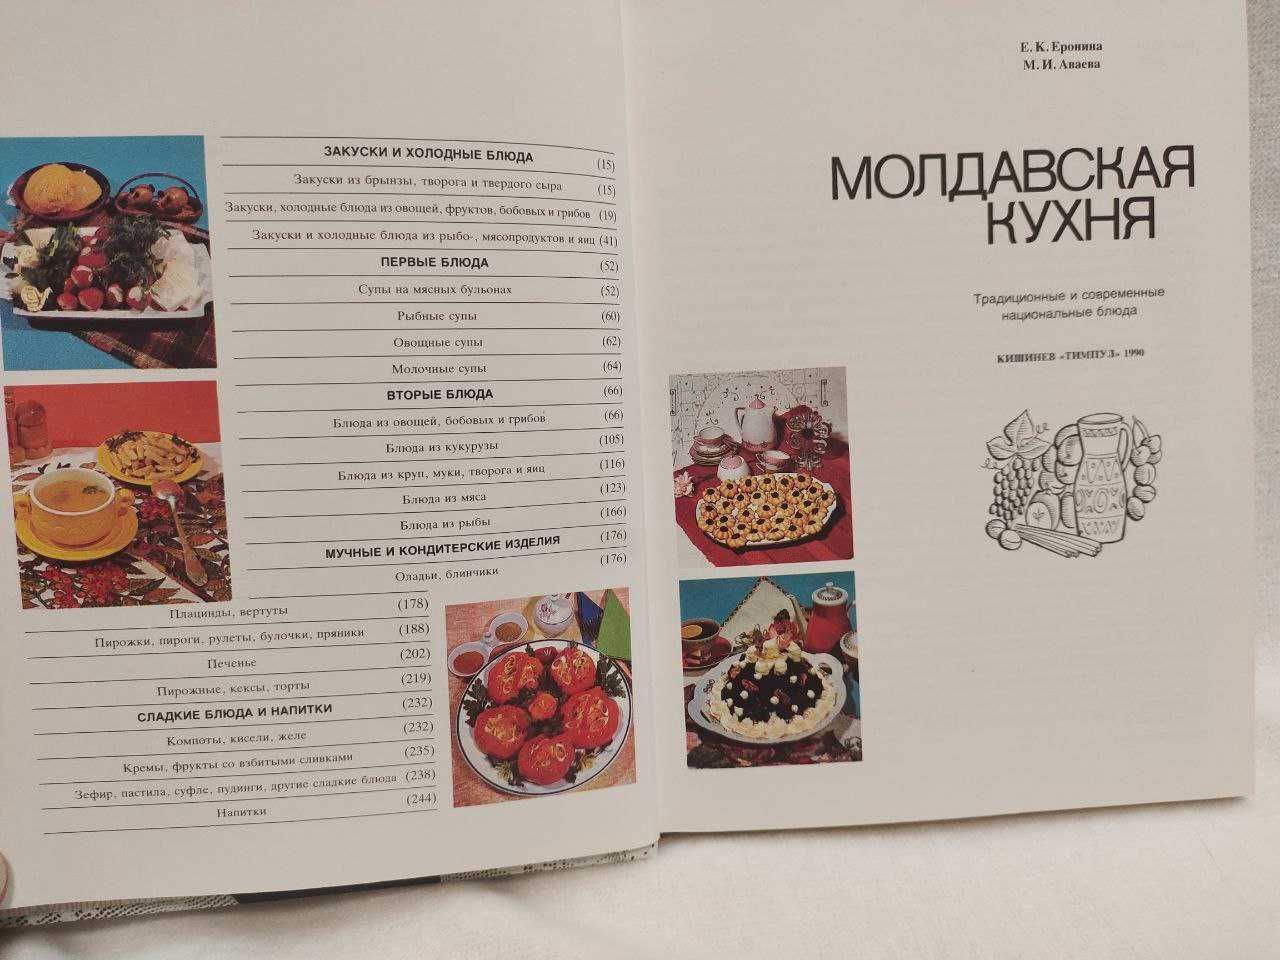 "Молдавская кухня" | Традиционные и современные национальные блюда